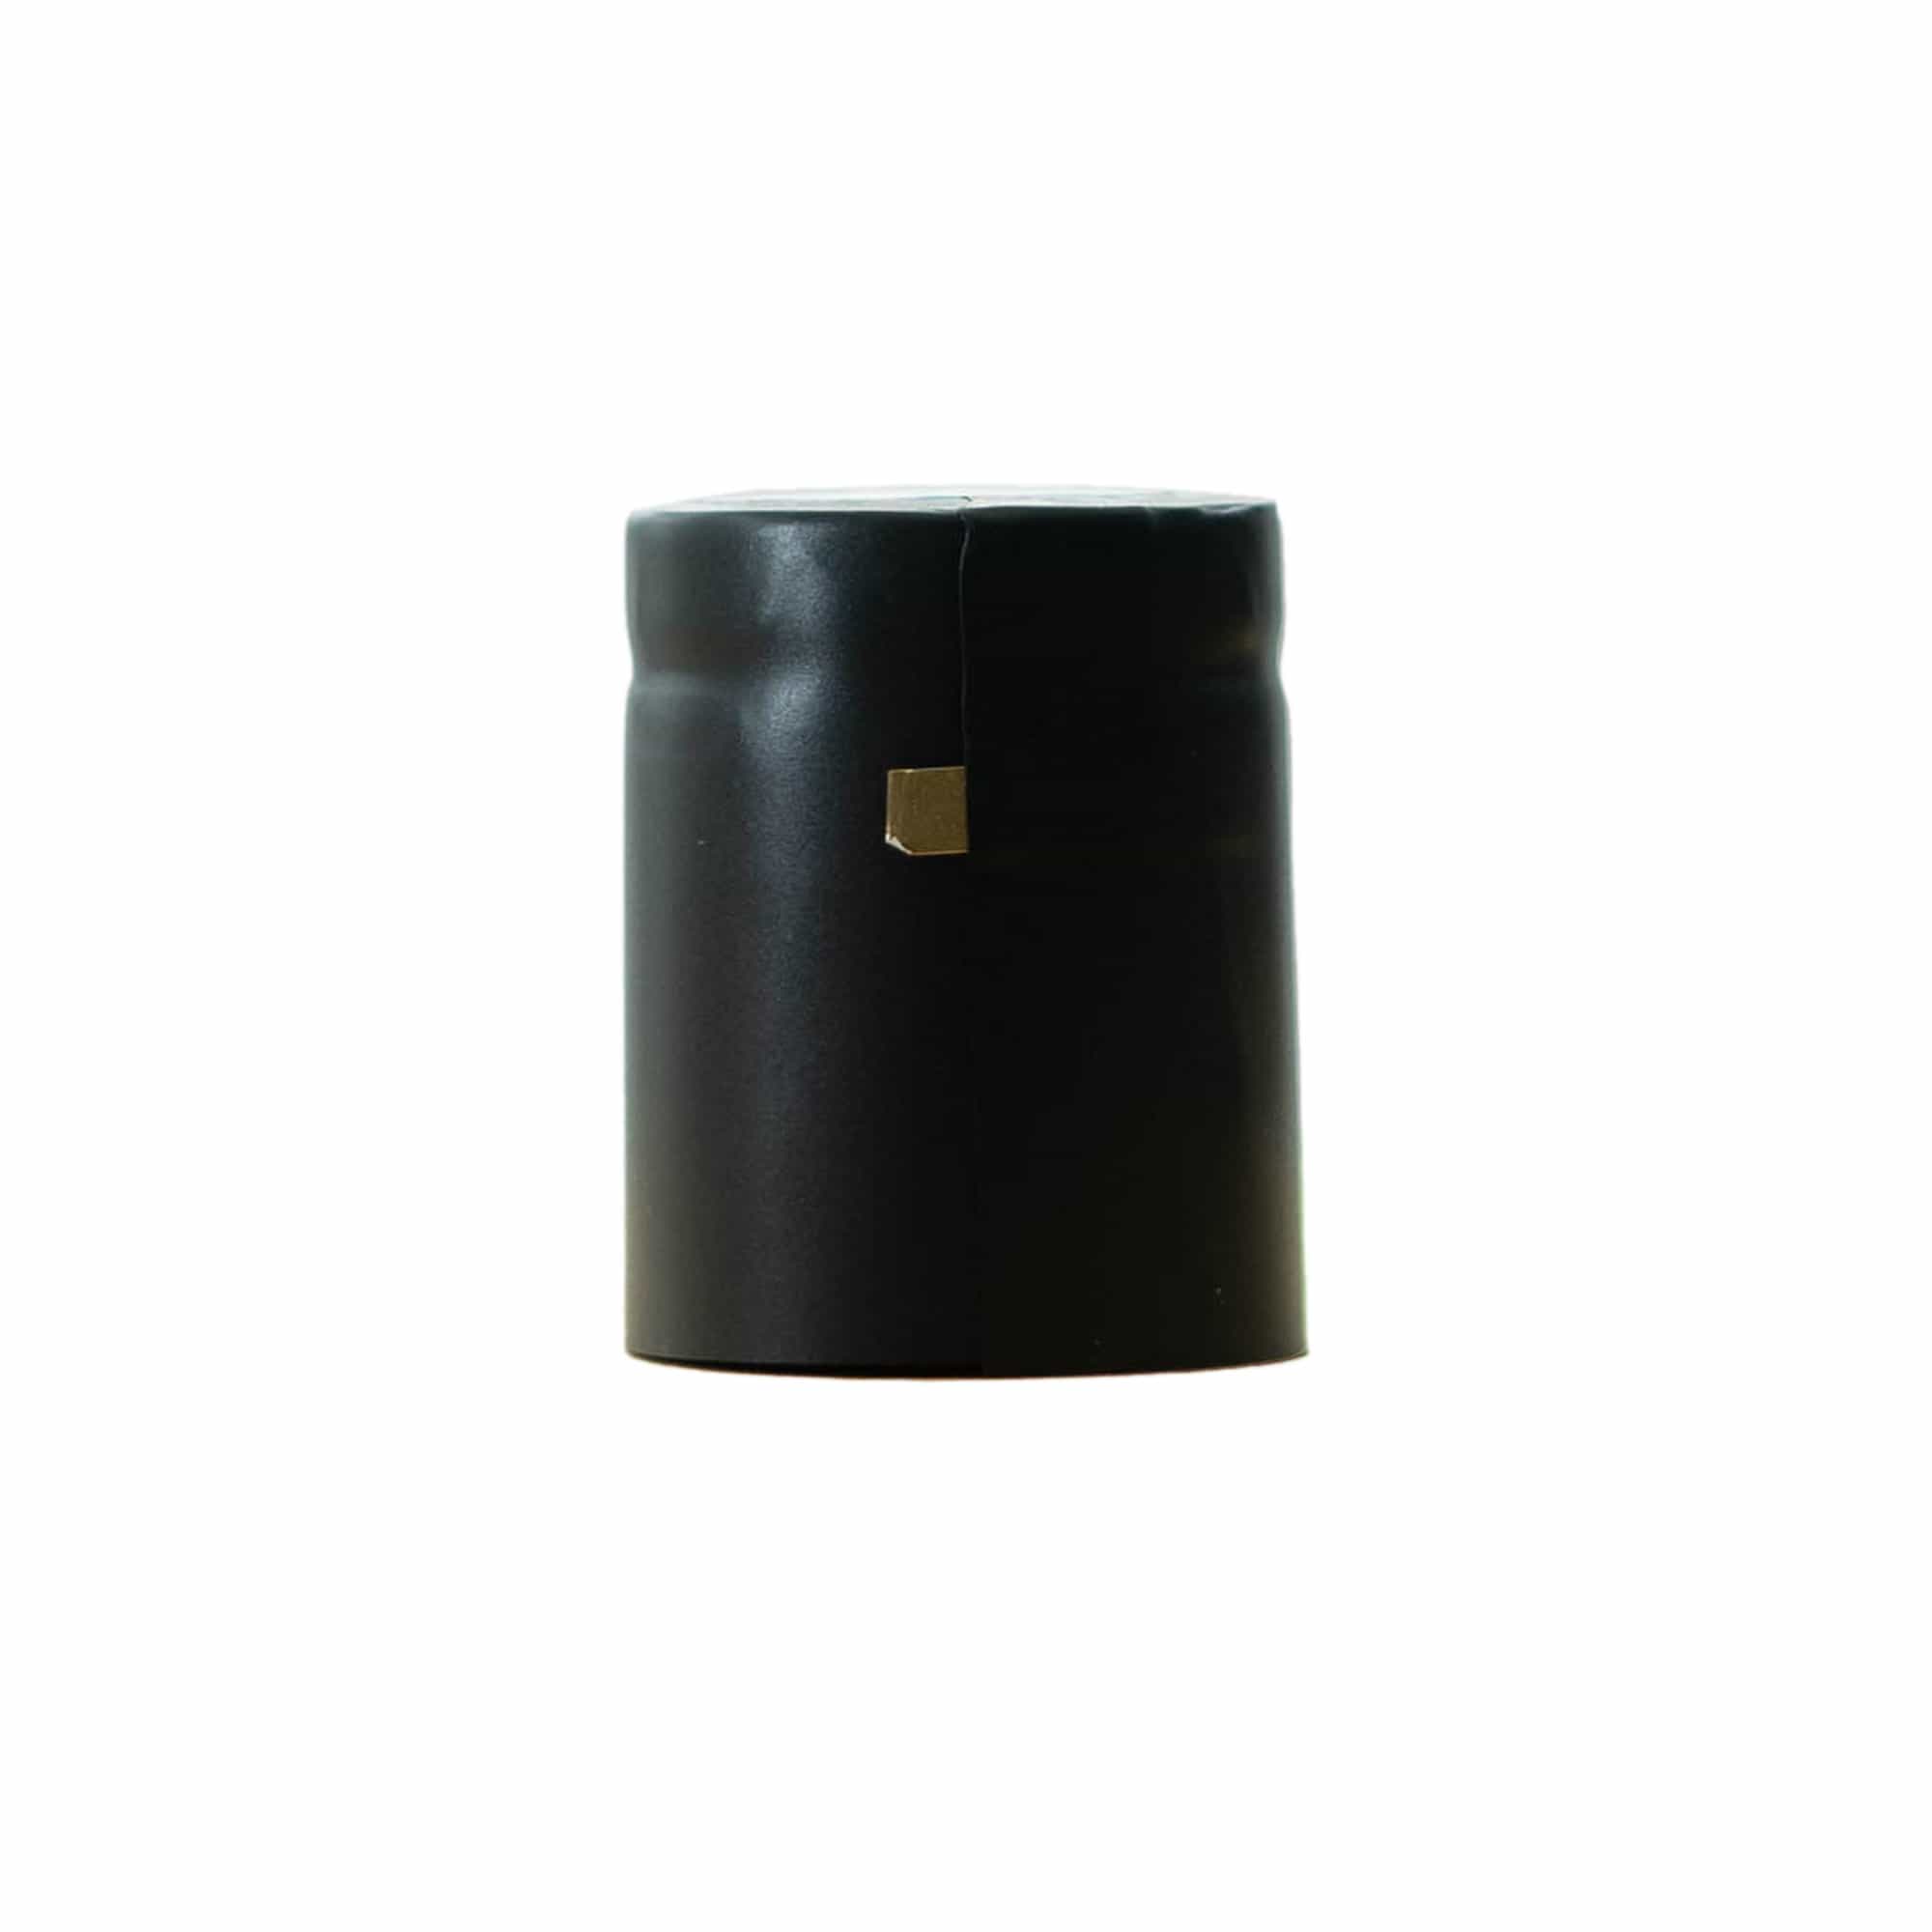 Schrumpfkapsel 32x41, PVC-Kunststoff, schwarz